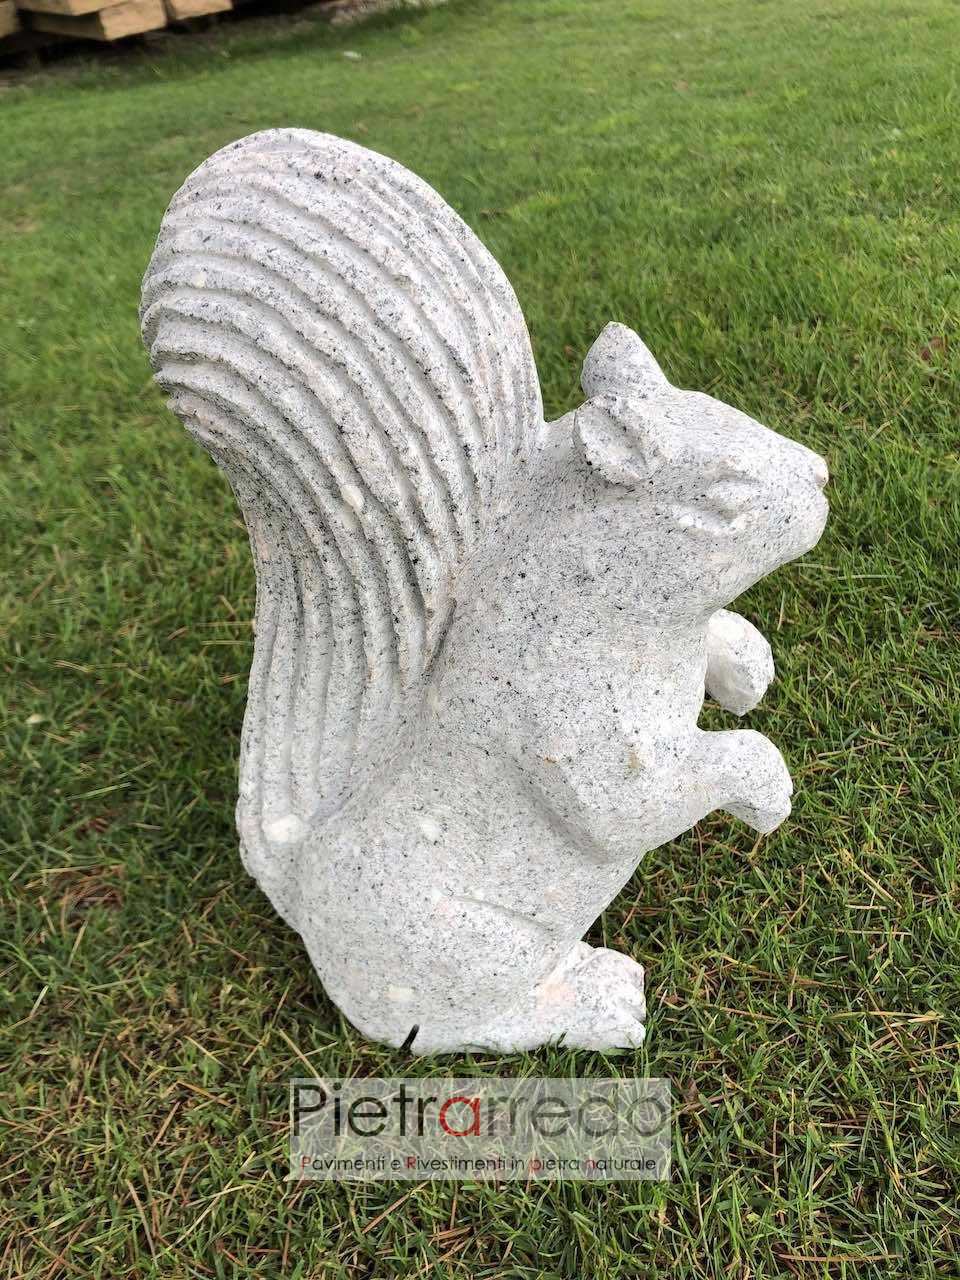 stone animal scoiattolo granito pietra lavorato a mano scalpellinato decorato arredo giardino stone garden pietrarredo milano costo